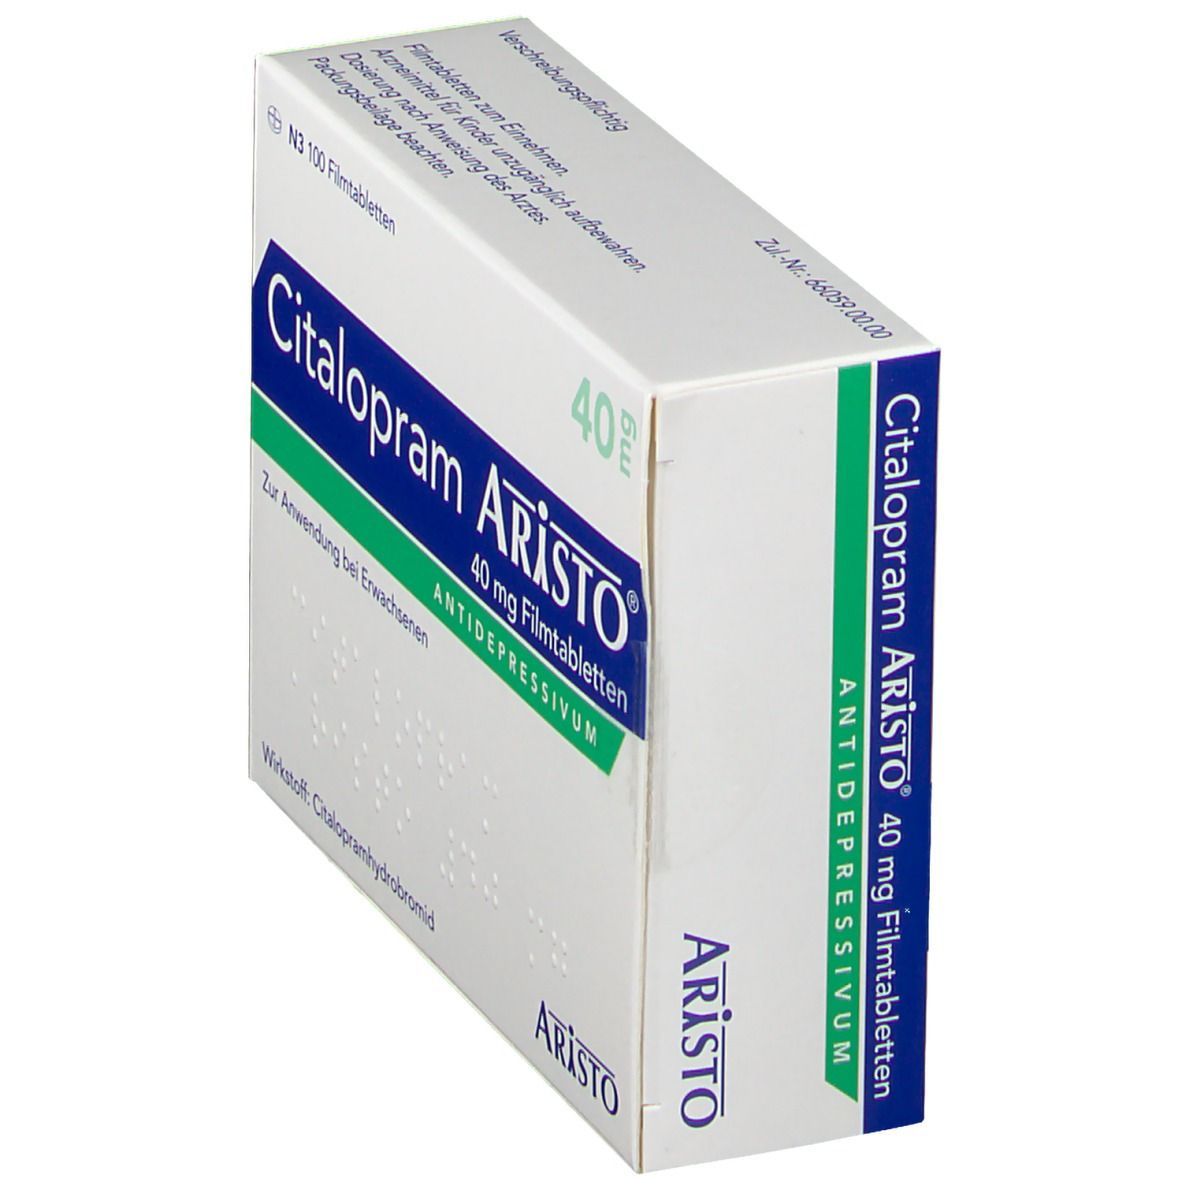 Citalopram Aristo® 40 mg